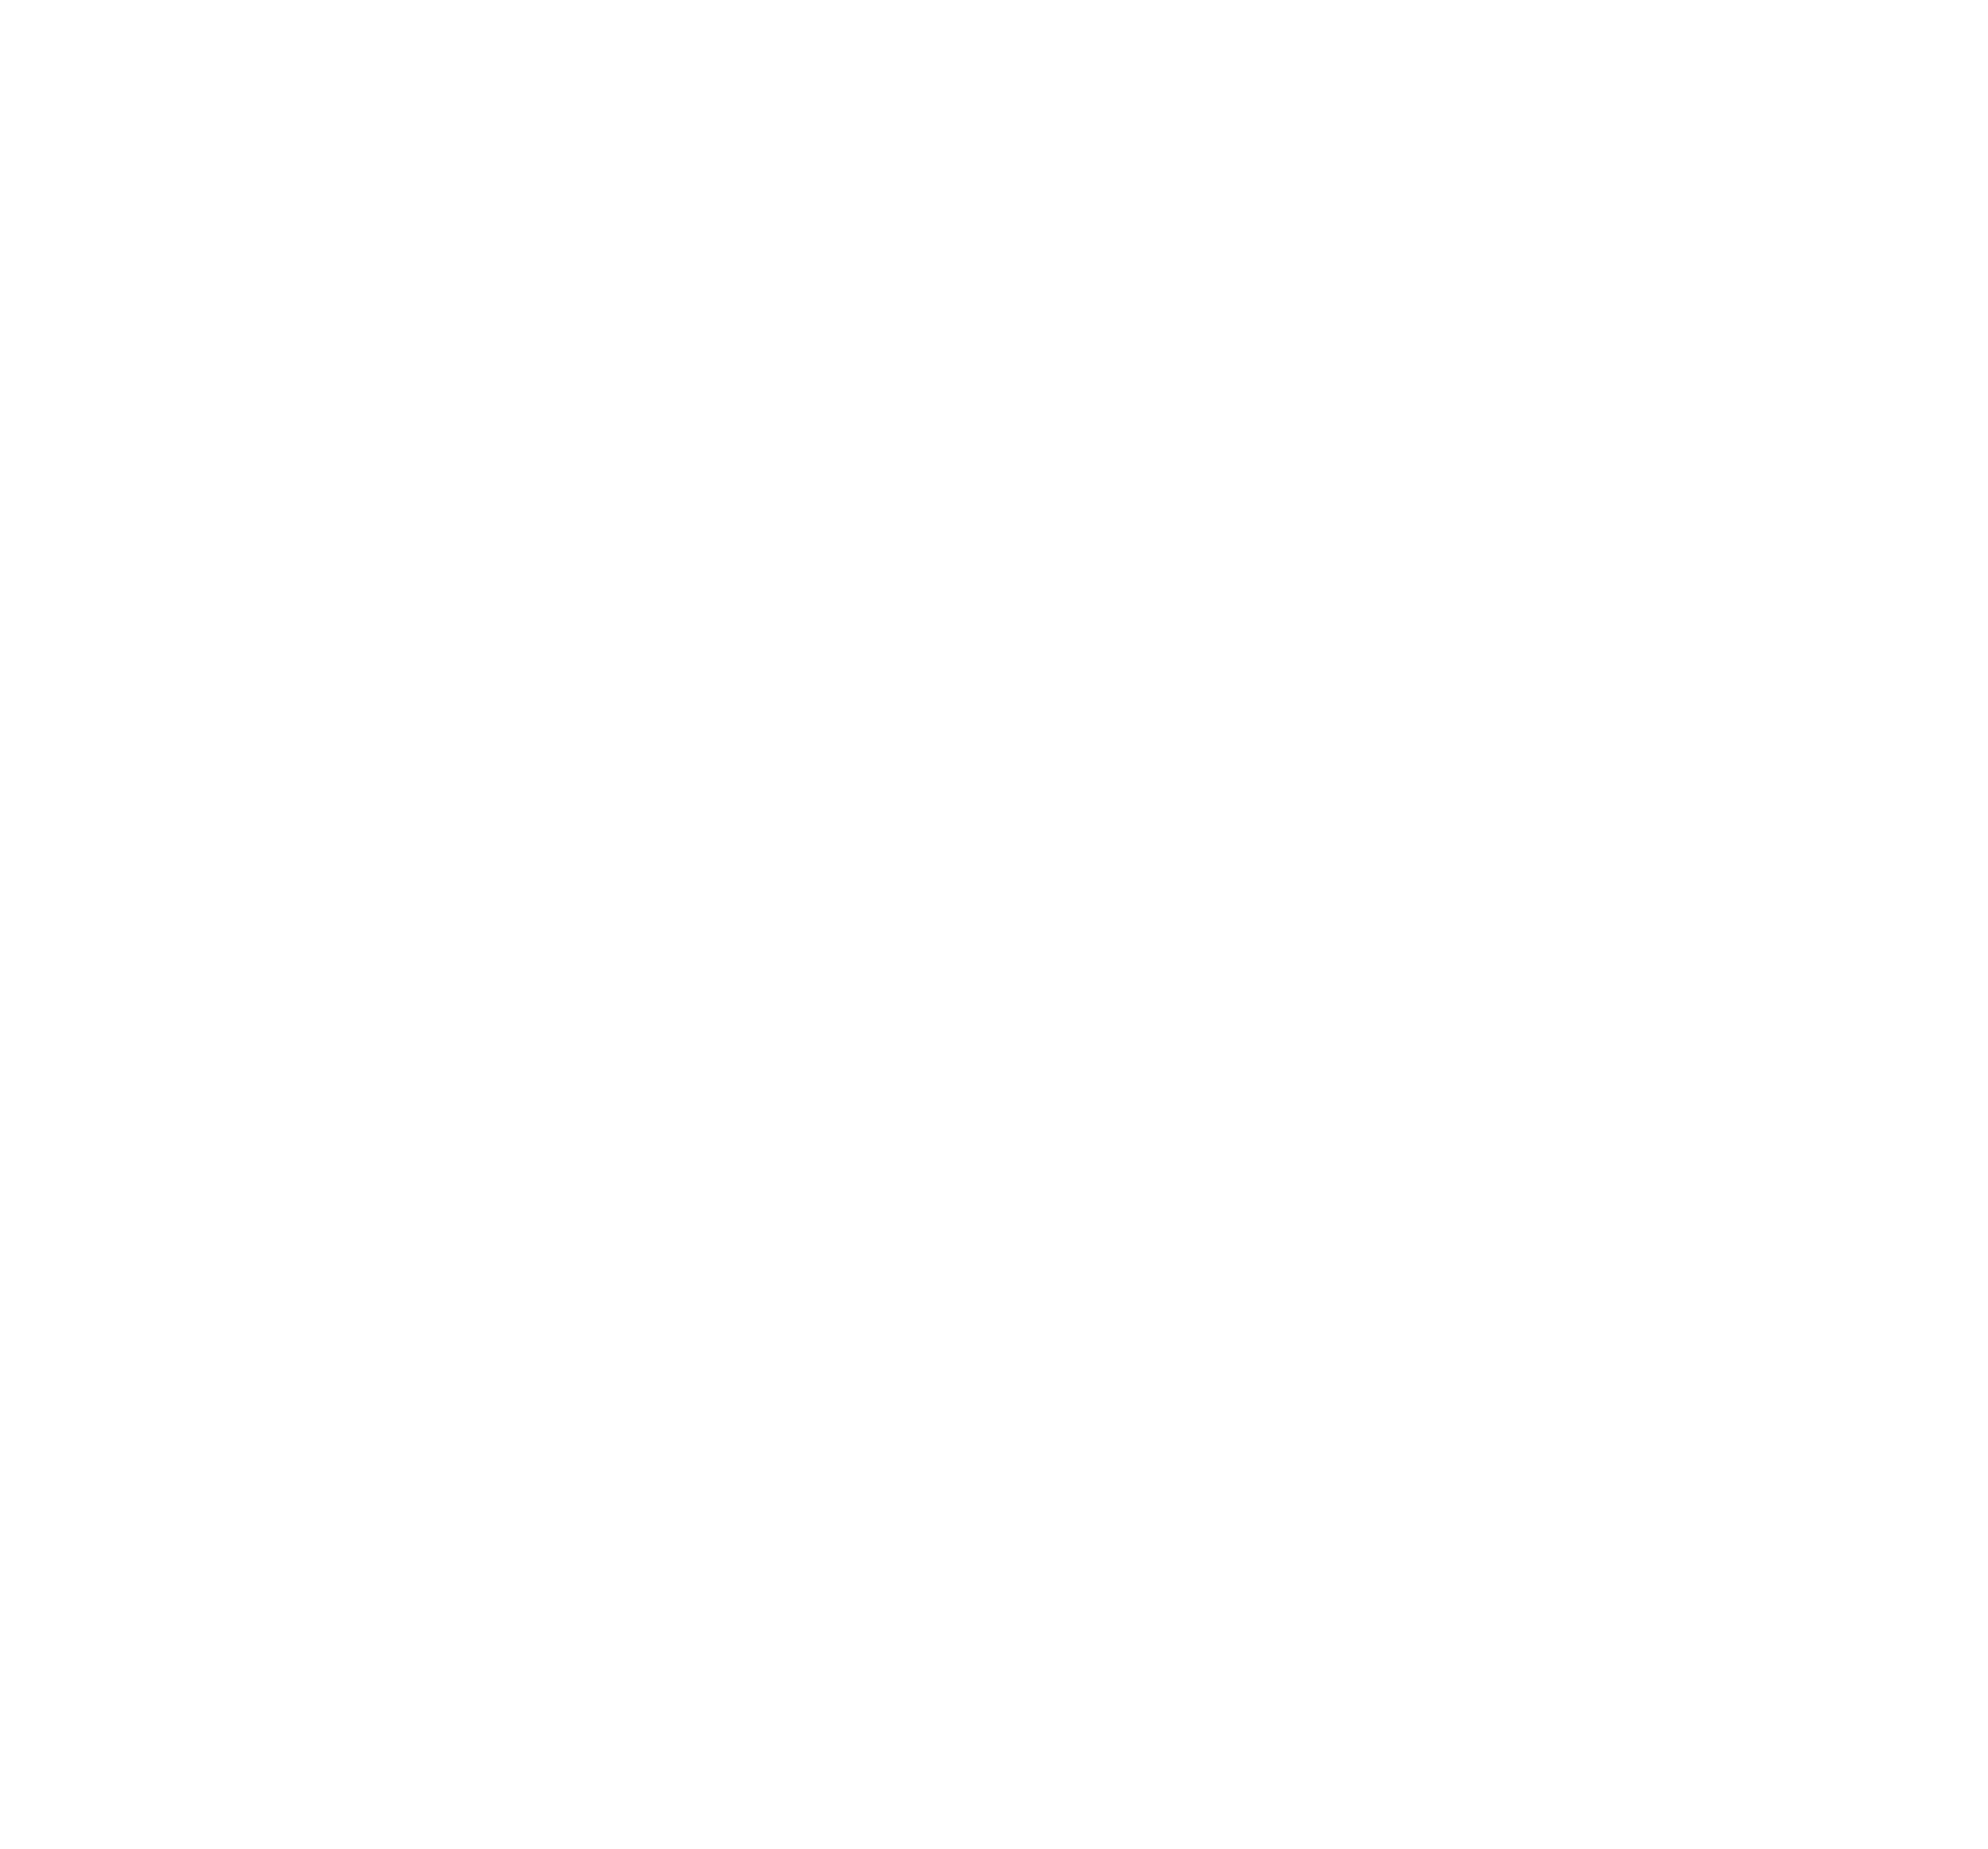 Proxy & VPN Blocker